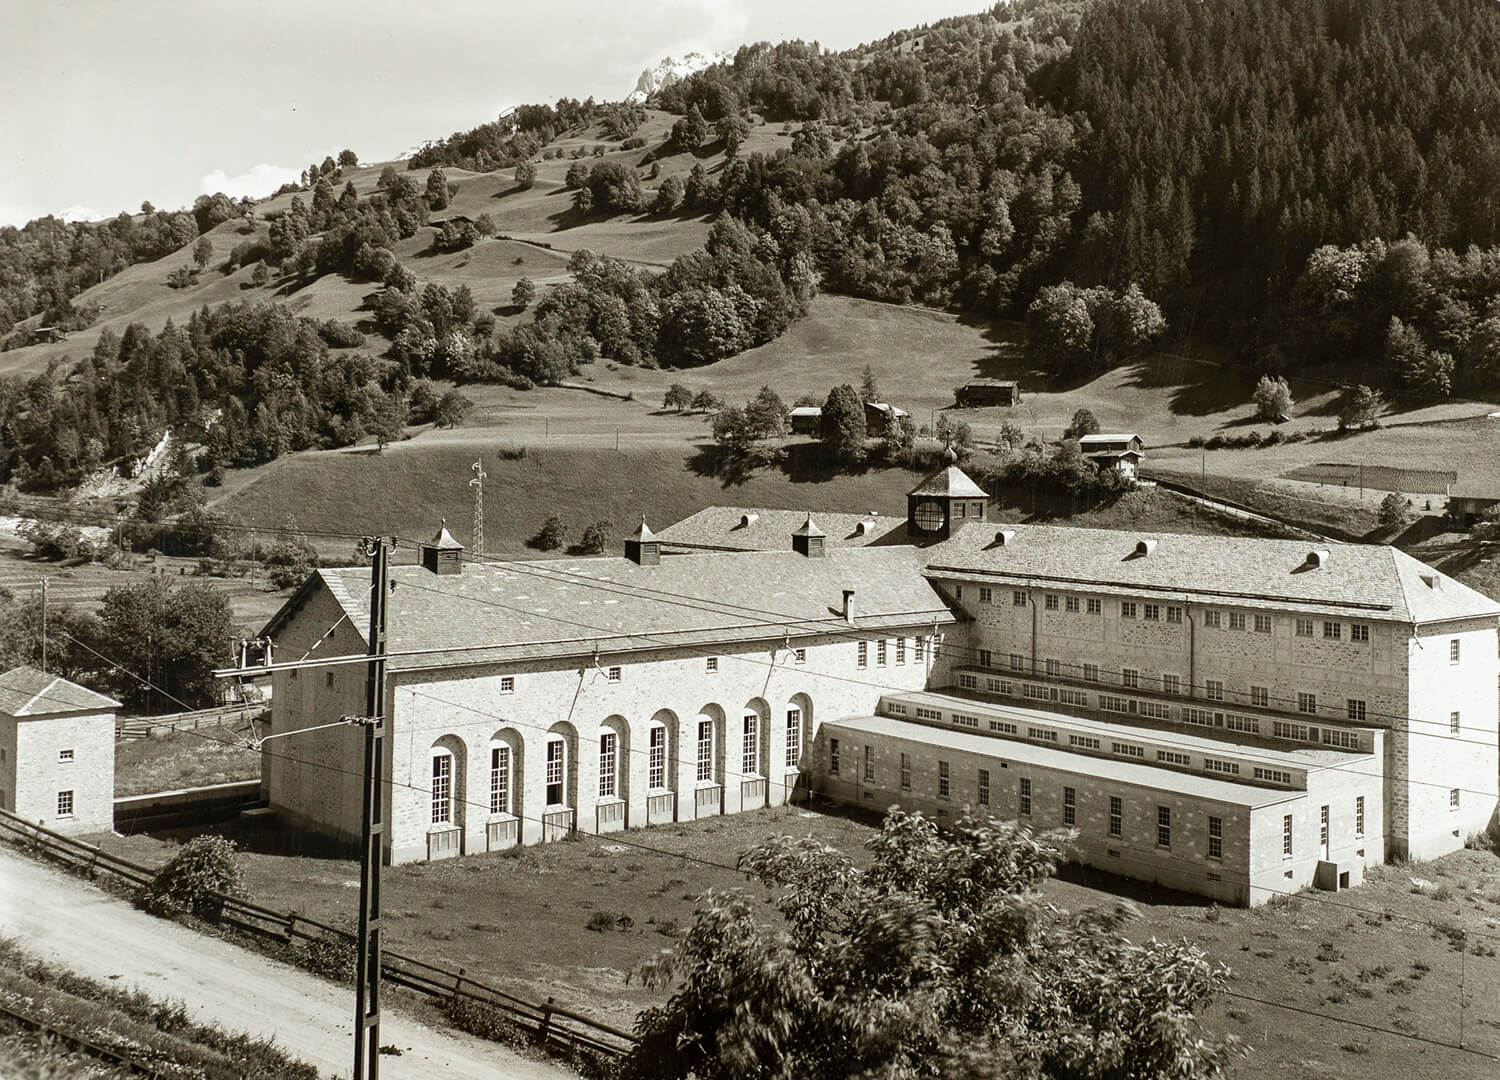 La centrale elettrica di Küblis era considerata una cattedrale della tecnologia